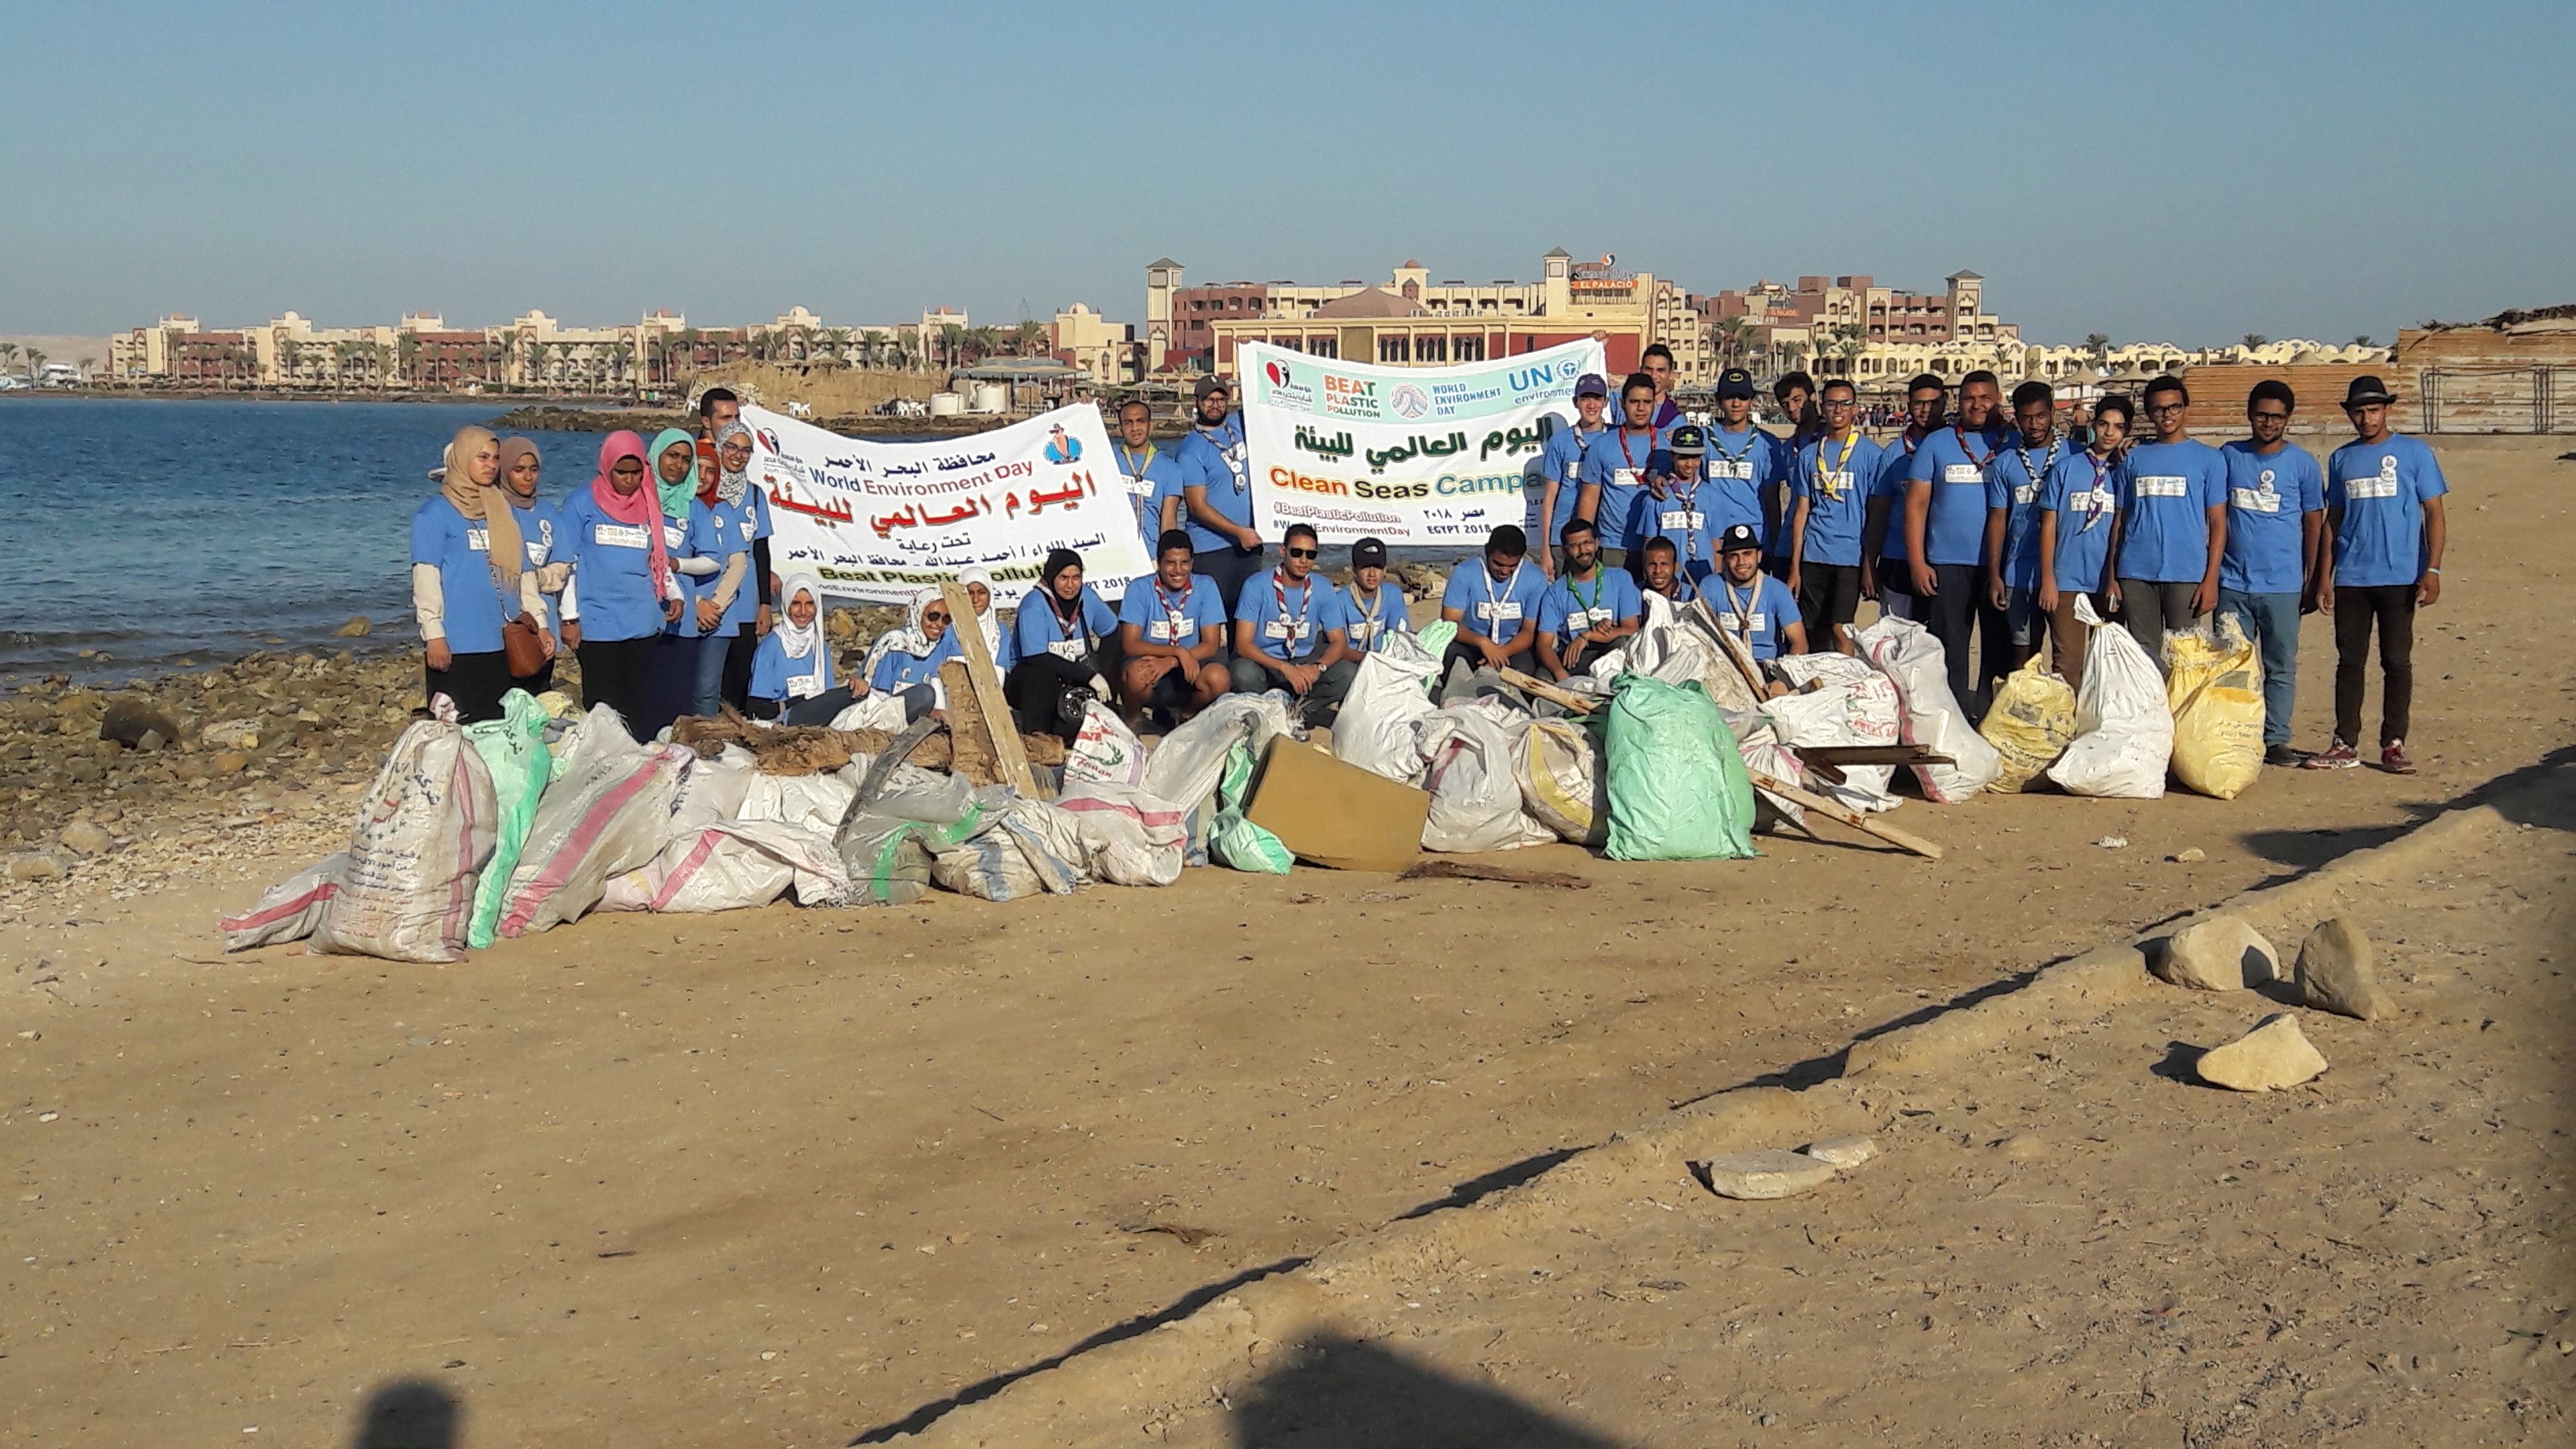 المشاركين فى مبادرة شباب بتحب مصر خلال النظافة  (1)